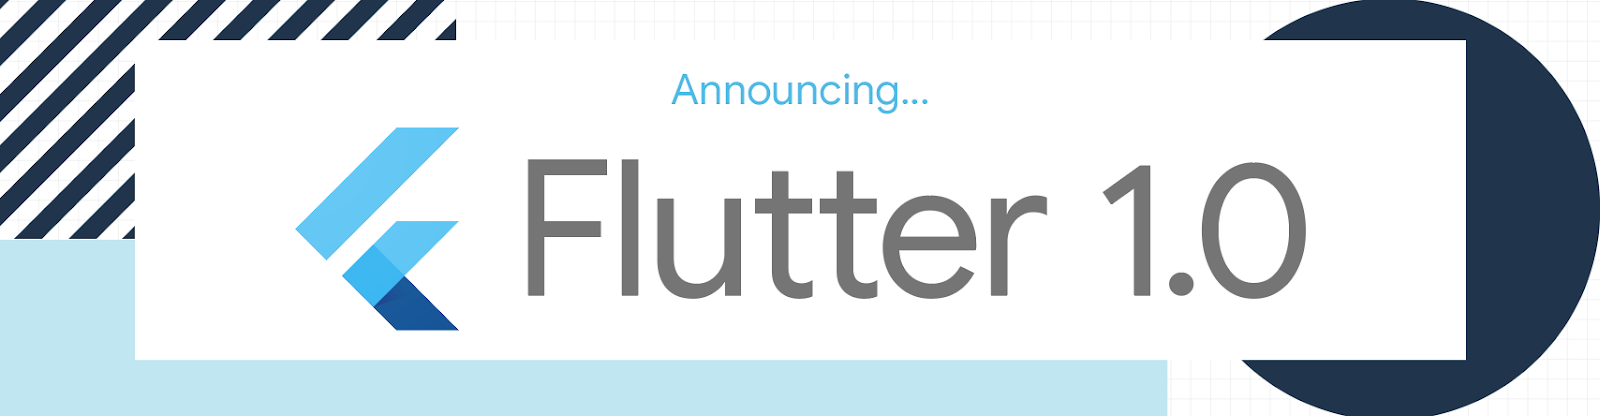 announcing flutter 1.0